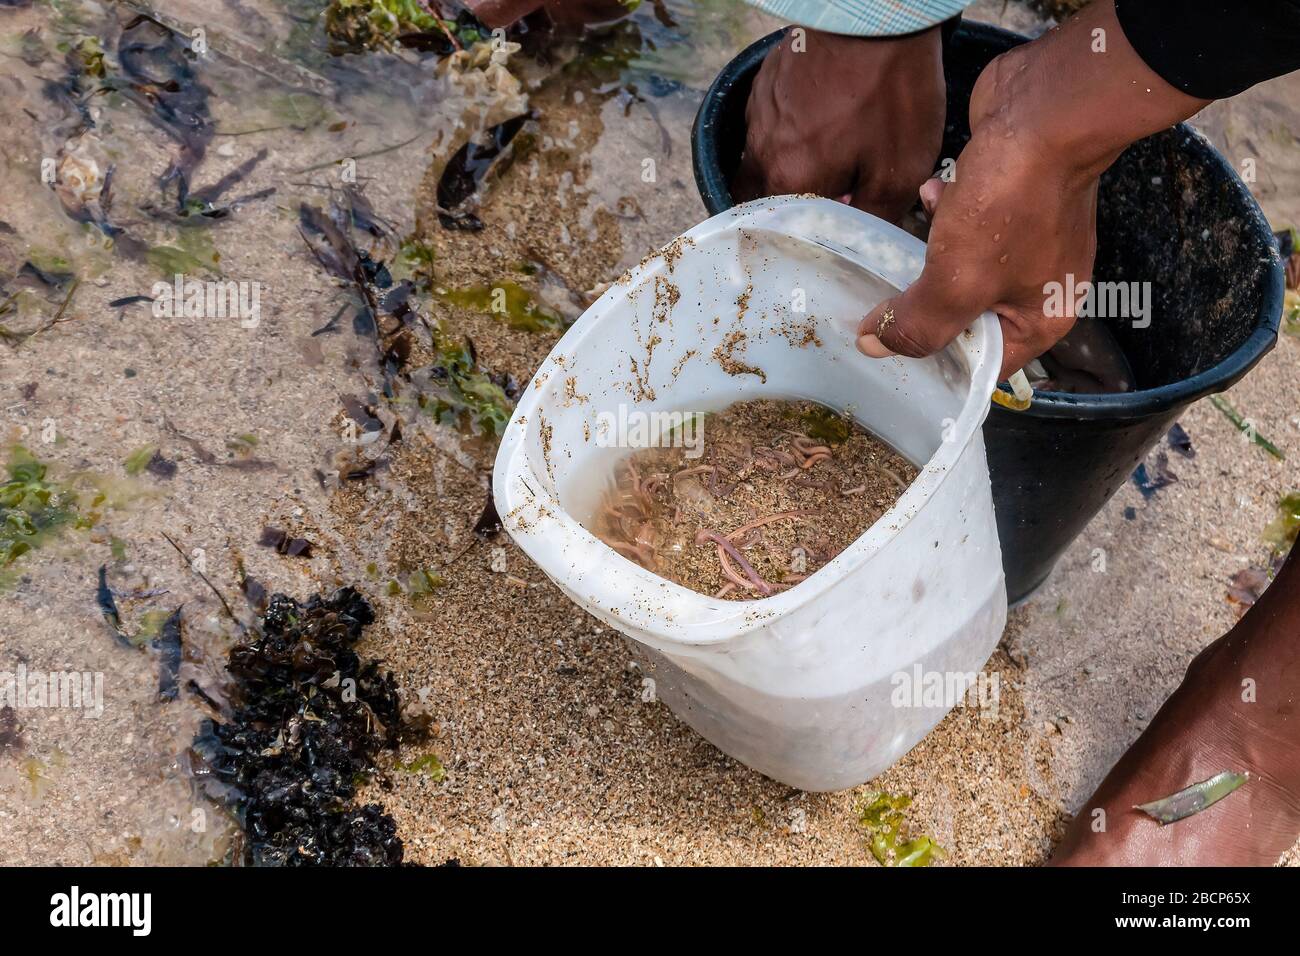 Wirbellose Meeresbewohner, die von einem Mann im Sand am Strand gesammelt werden. Bali, Indonesien Stockfoto